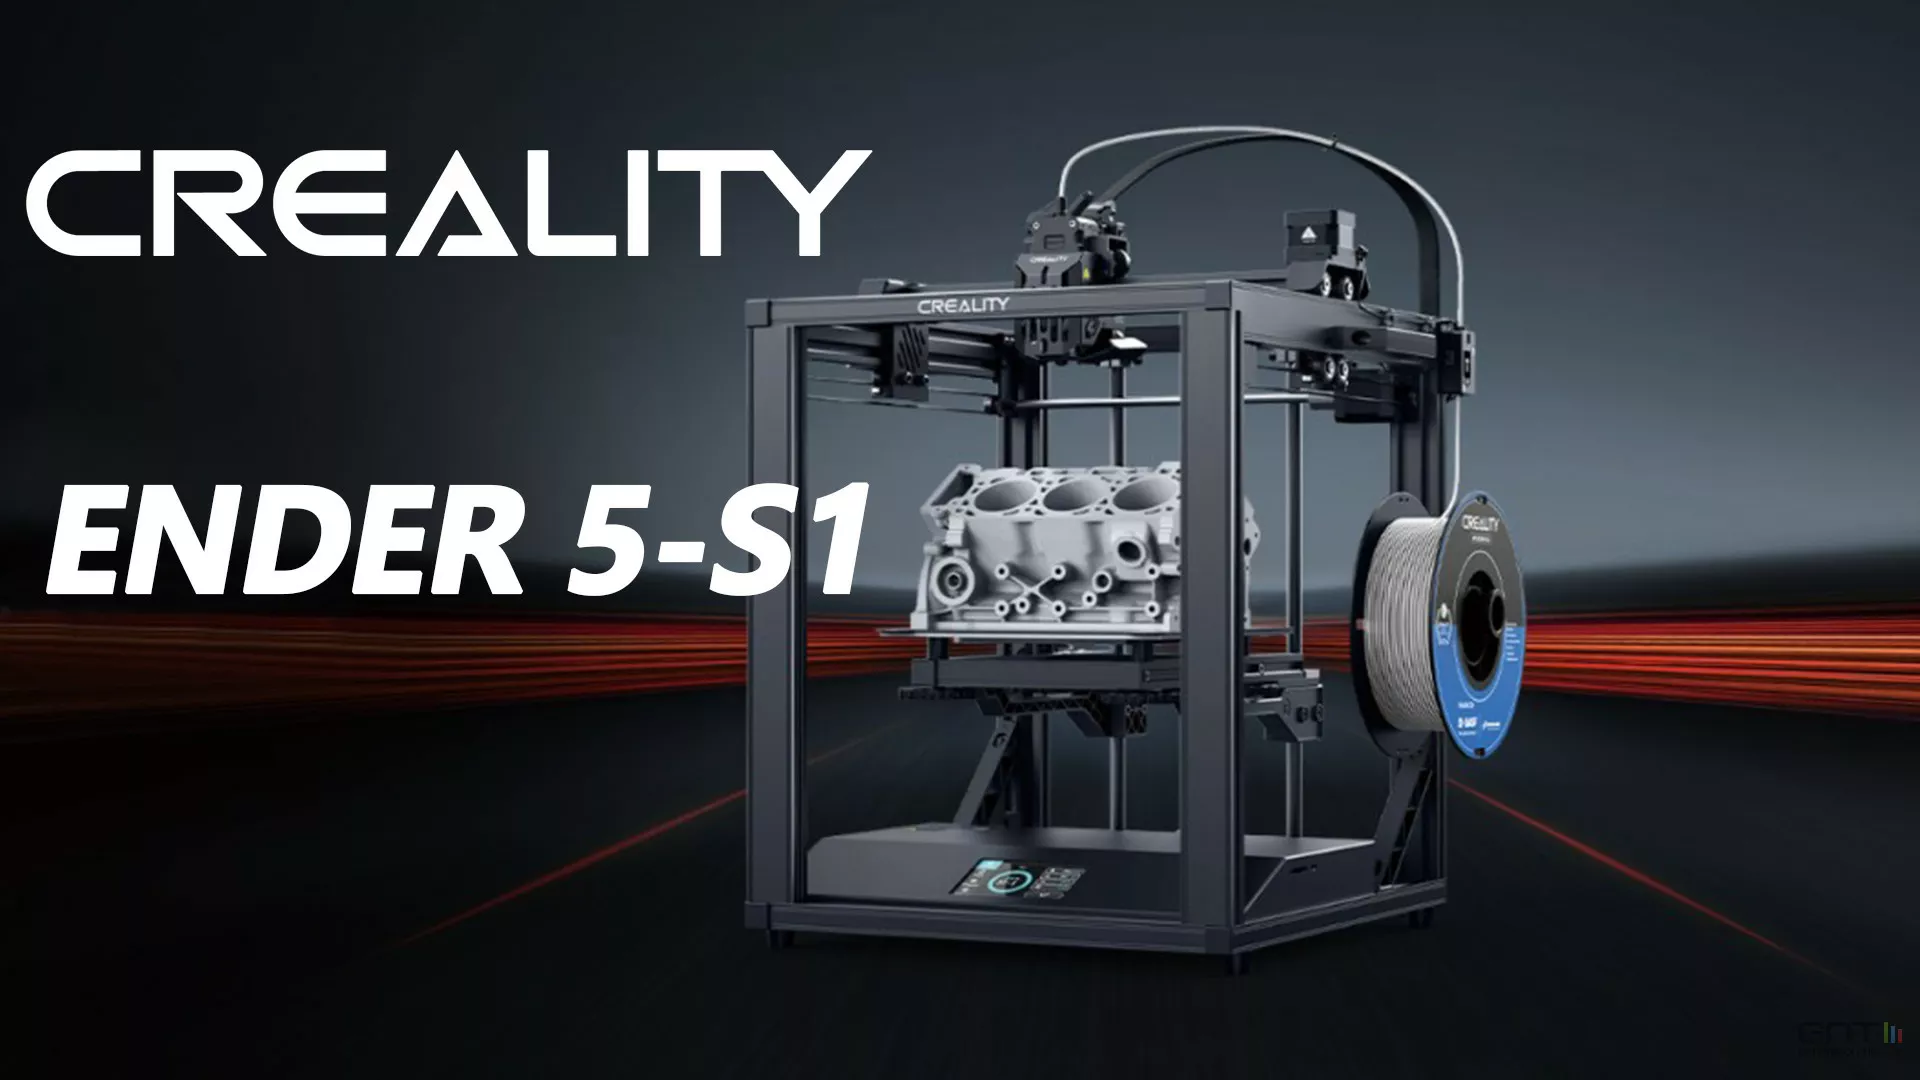 Remontage tube ptfe et buse - Discussion sur les imprimantes 3D - Forum  pour les imprimantes 3D et l'impression 3D